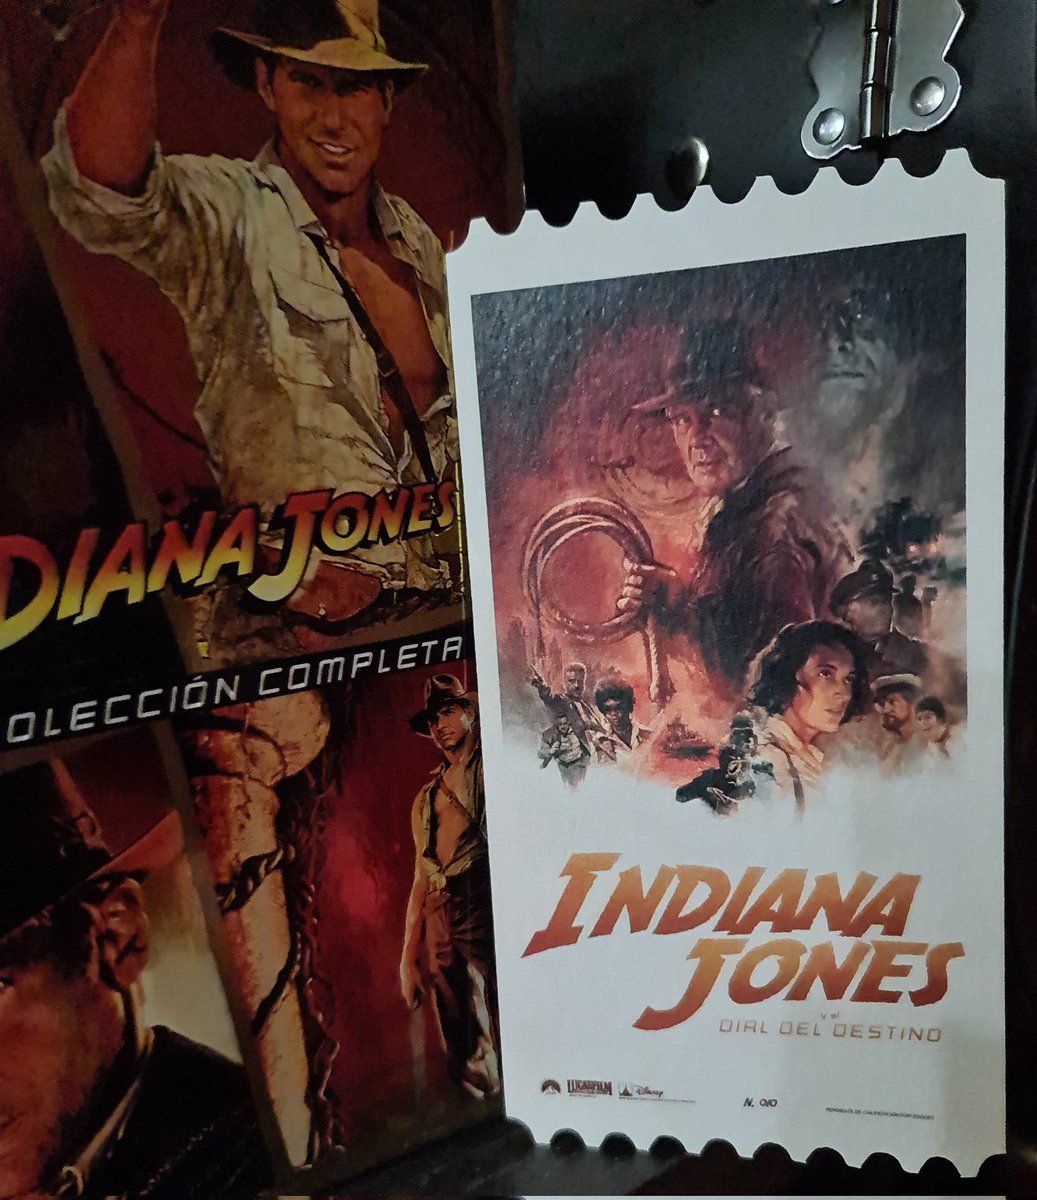 Ultima entrega de #IndianaJones en la pantalla grande y solo puedo decir que el prologo y el trabajo que ha debido llevar encima es simplemente increible. Que nostalgia al verlo!!! Gracias por la preciosa #megaentrada @cinespalafox!!! Entra en mi Top 3 de rugosas!!! 😁